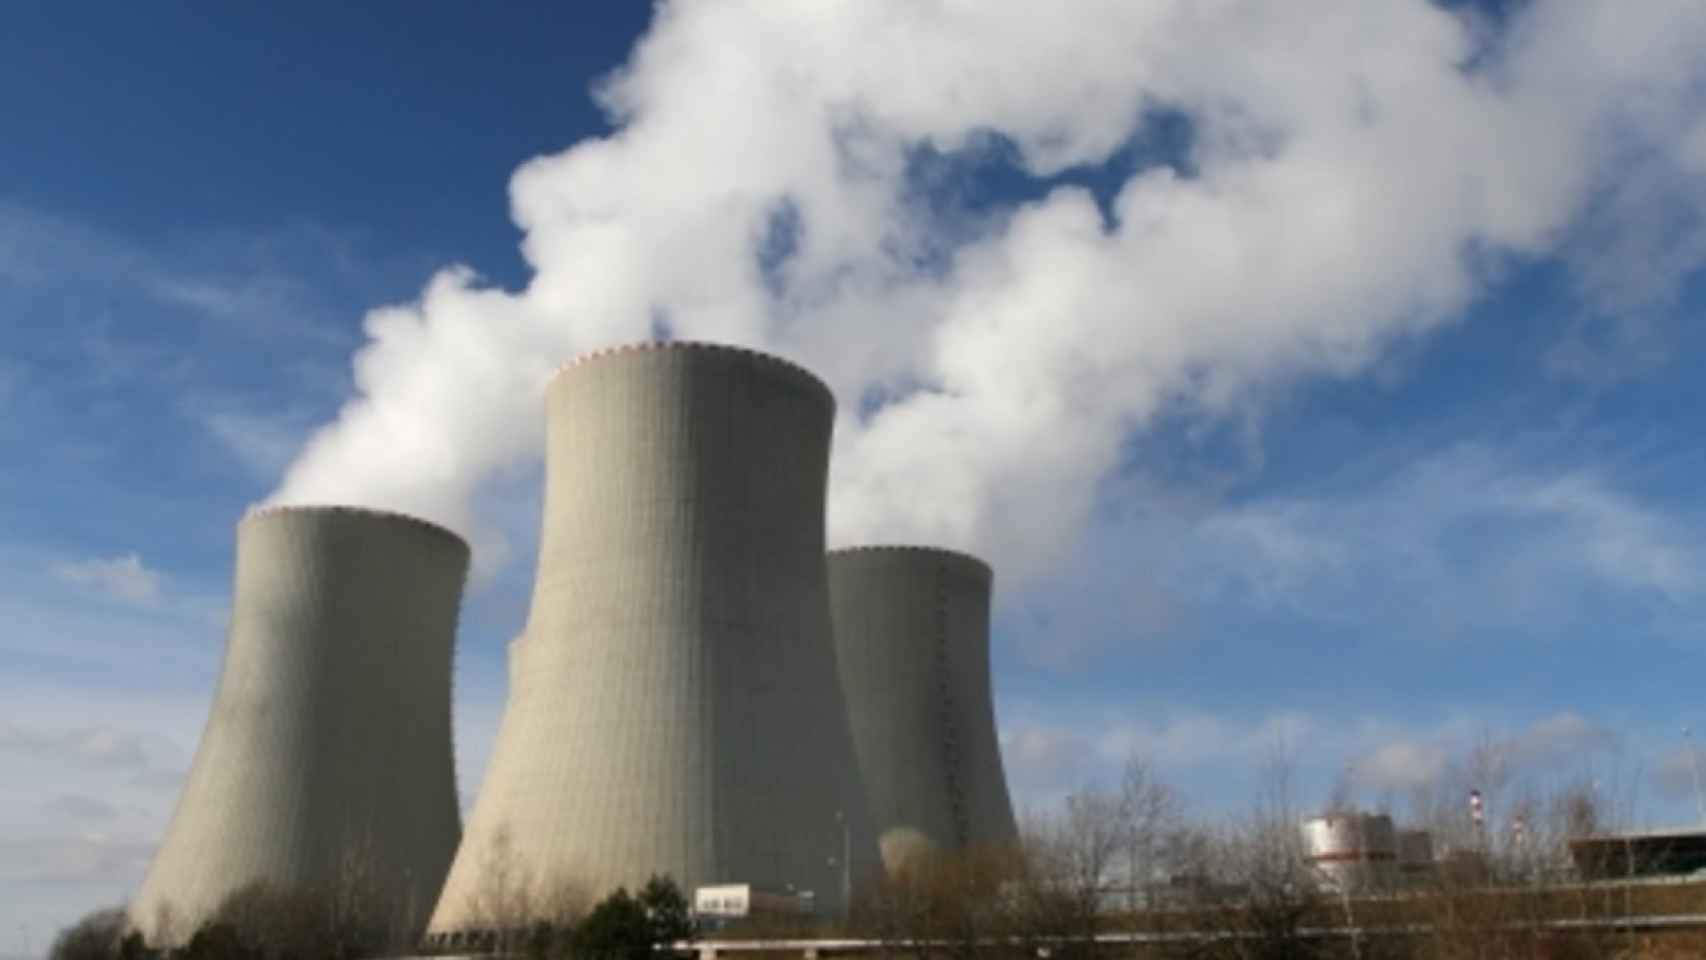 ¿Qué países europeos son los mayores productores de energía nuclear?